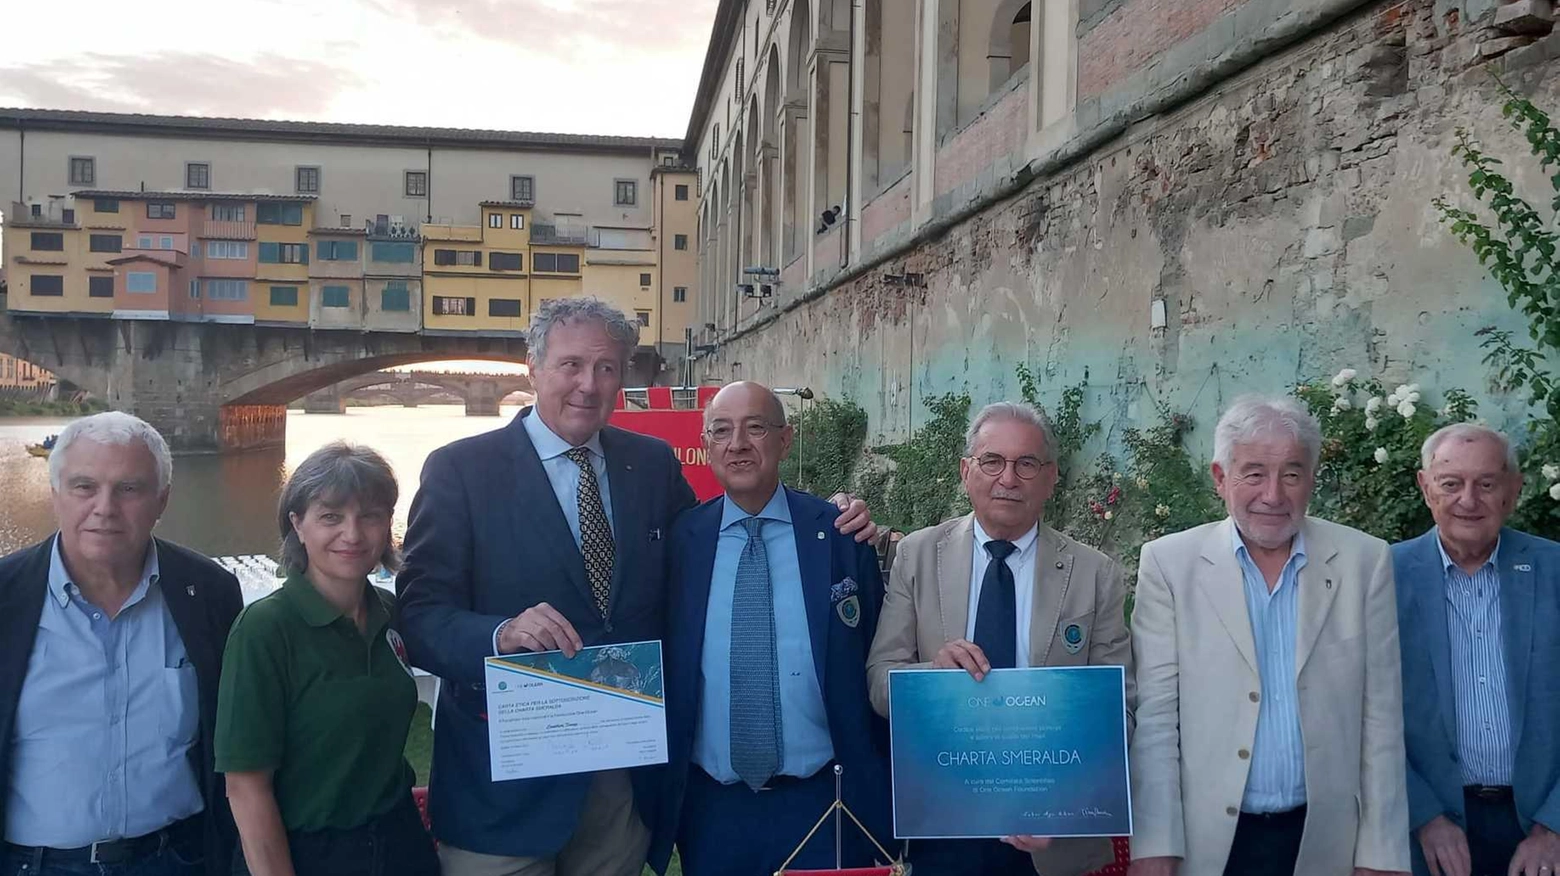 Canottieri Firenze premiate con la Charta Smeralda per l'impegno sulla sostenibilità ambientale